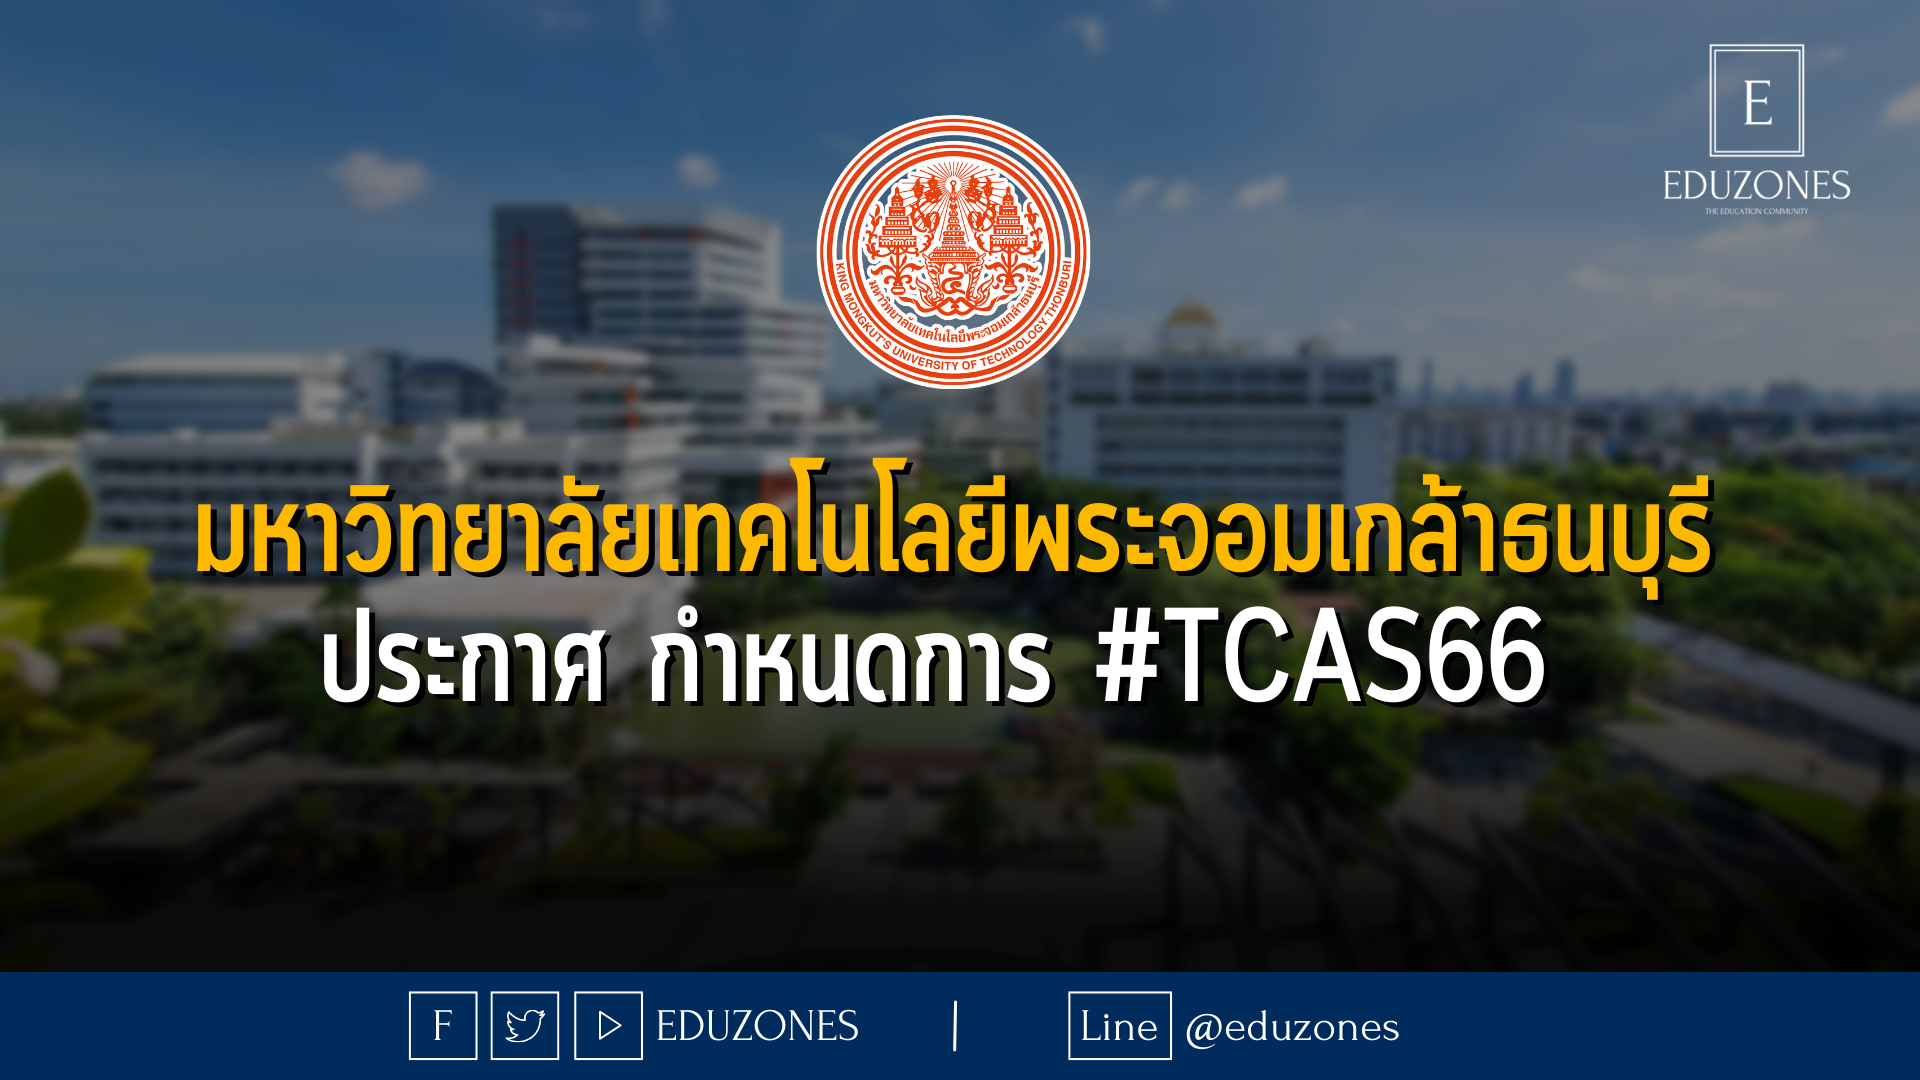 มหาวิทยาลัยเทคโนโลยีพระจอมเกล้าธนบุรี ประกาศ กำหนดการ #TCAS66 